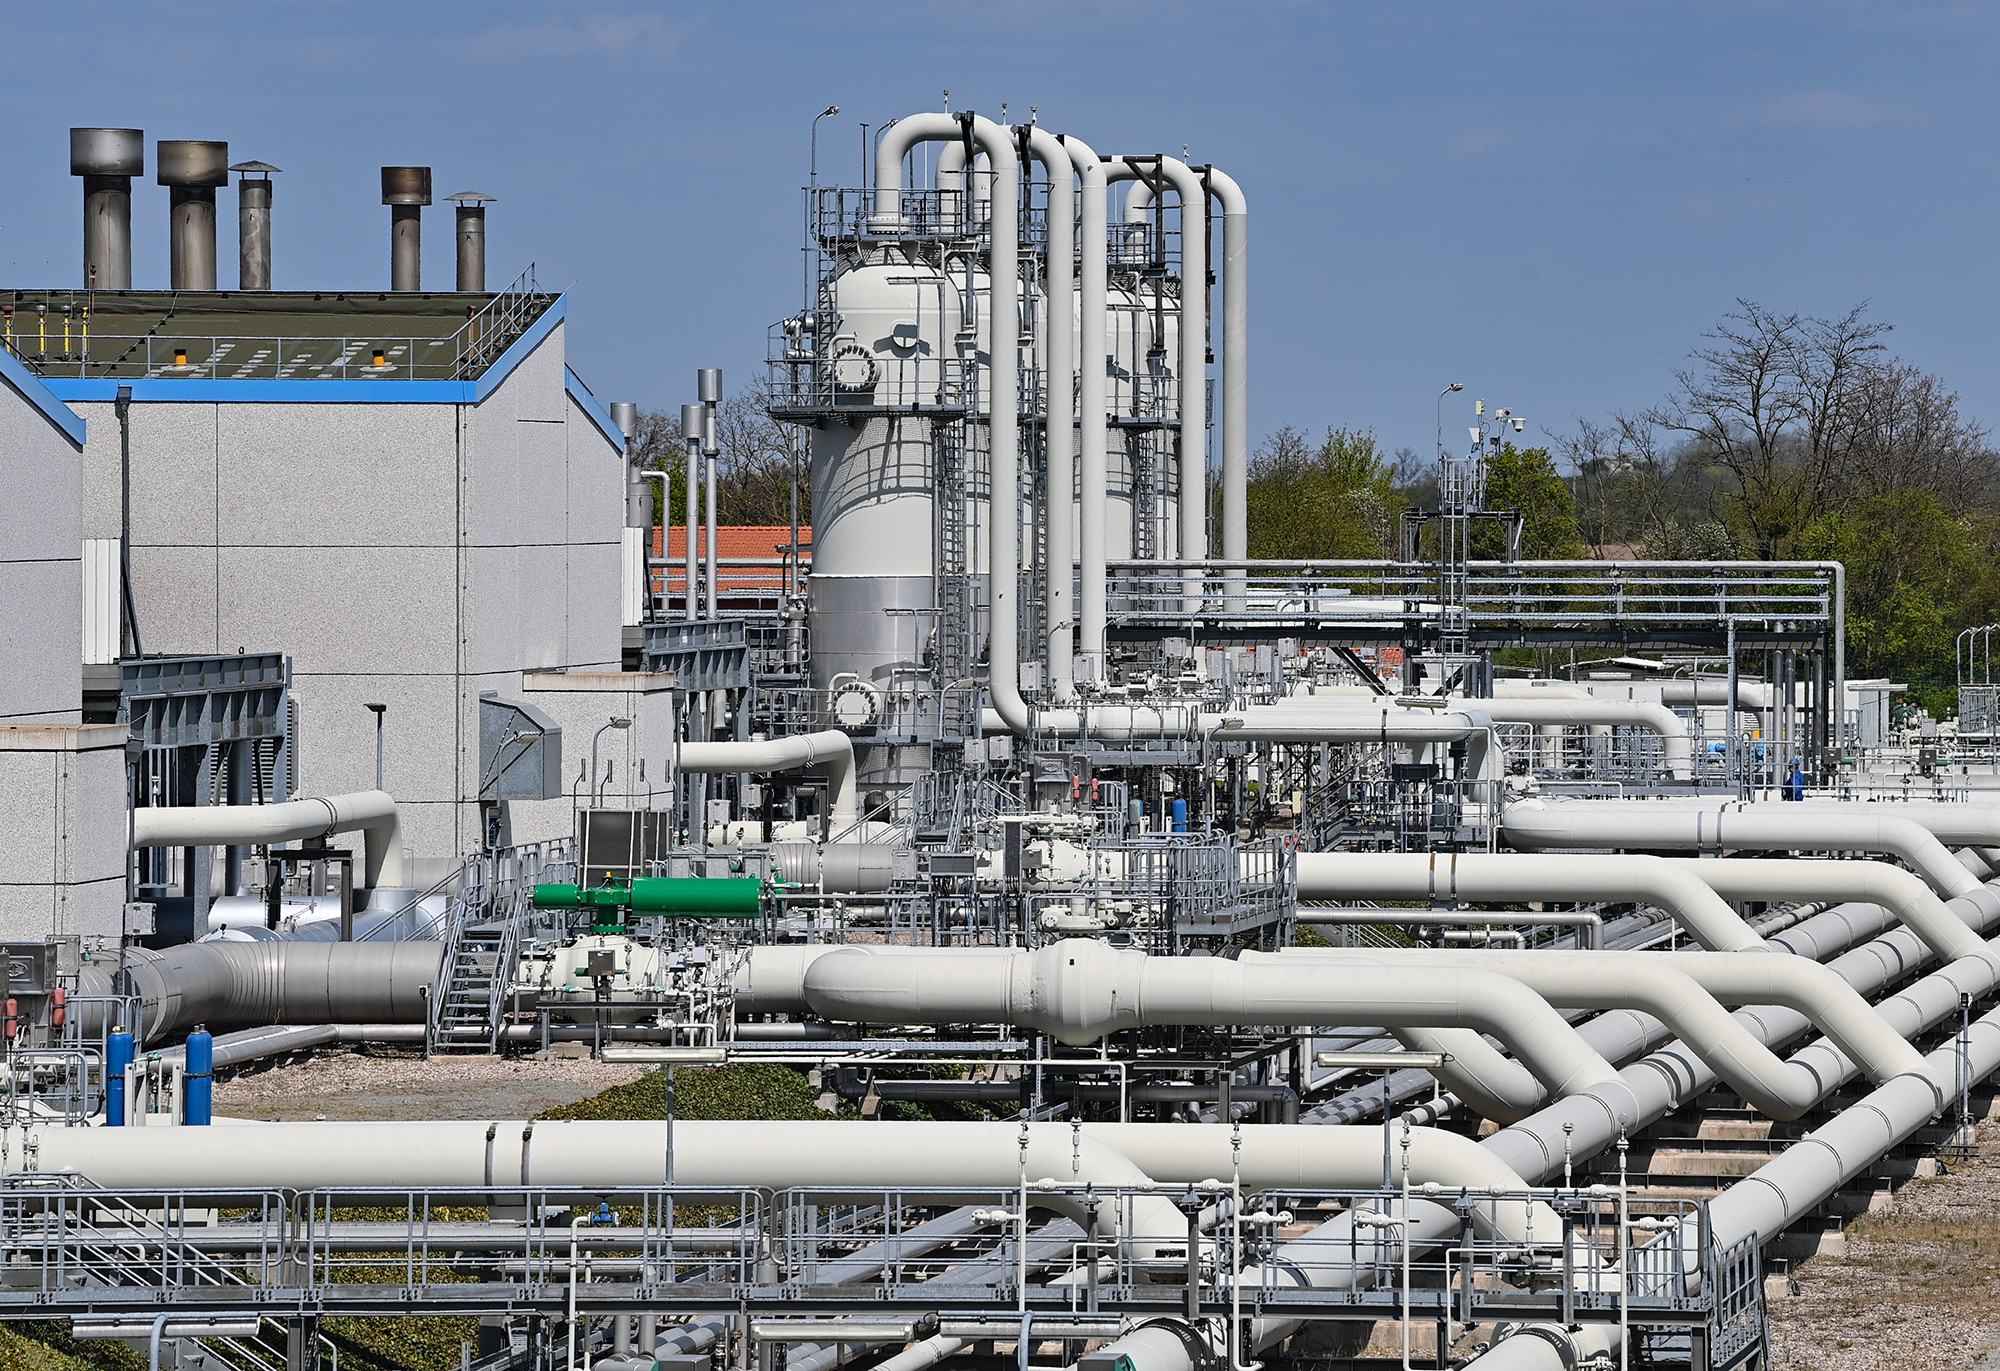 La station de compression de gaz naturel de Mallnow de Gascade Gastransport GmbH le 27 avril. La station de compression de Mallnow, près de la frontière germano-polonaise, reçoit principalement du gaz naturel russe. 